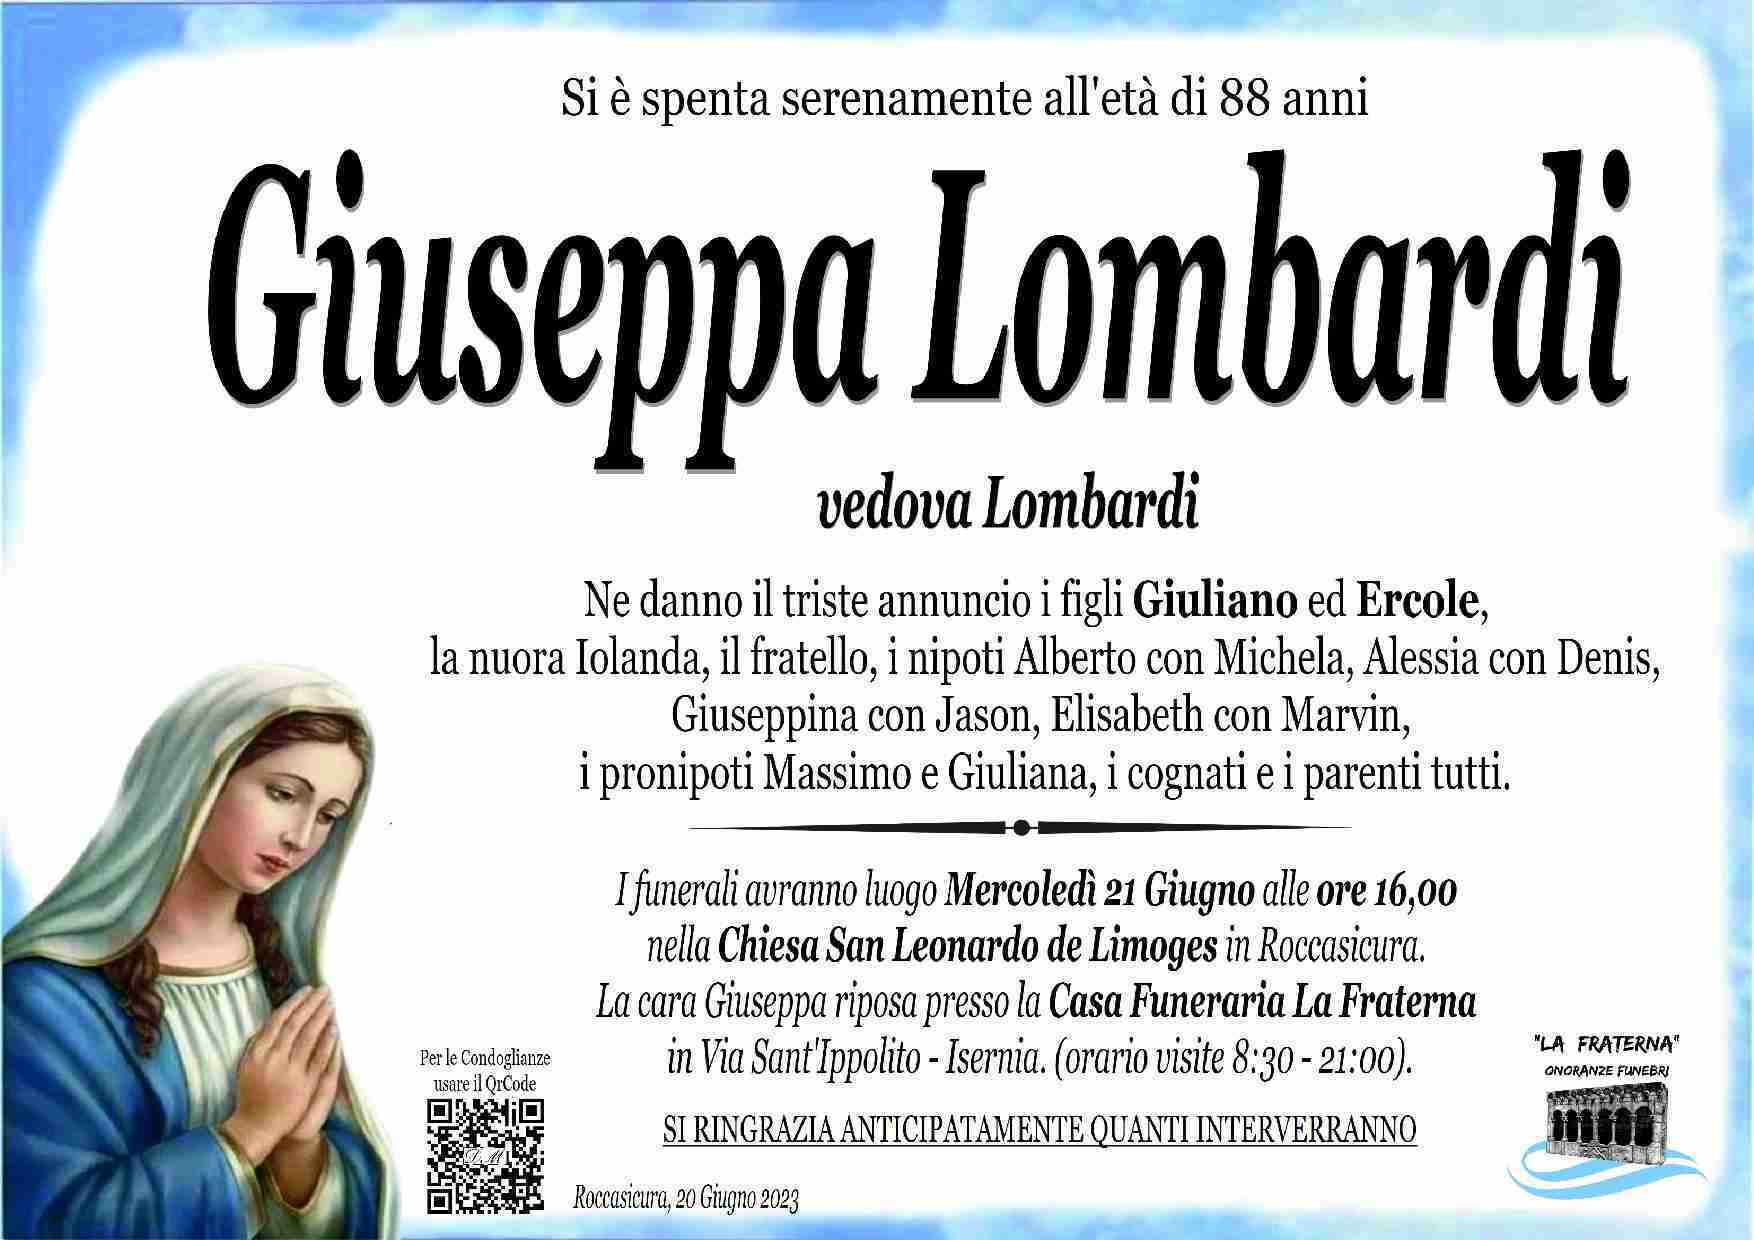 Giuseppa Lombardi